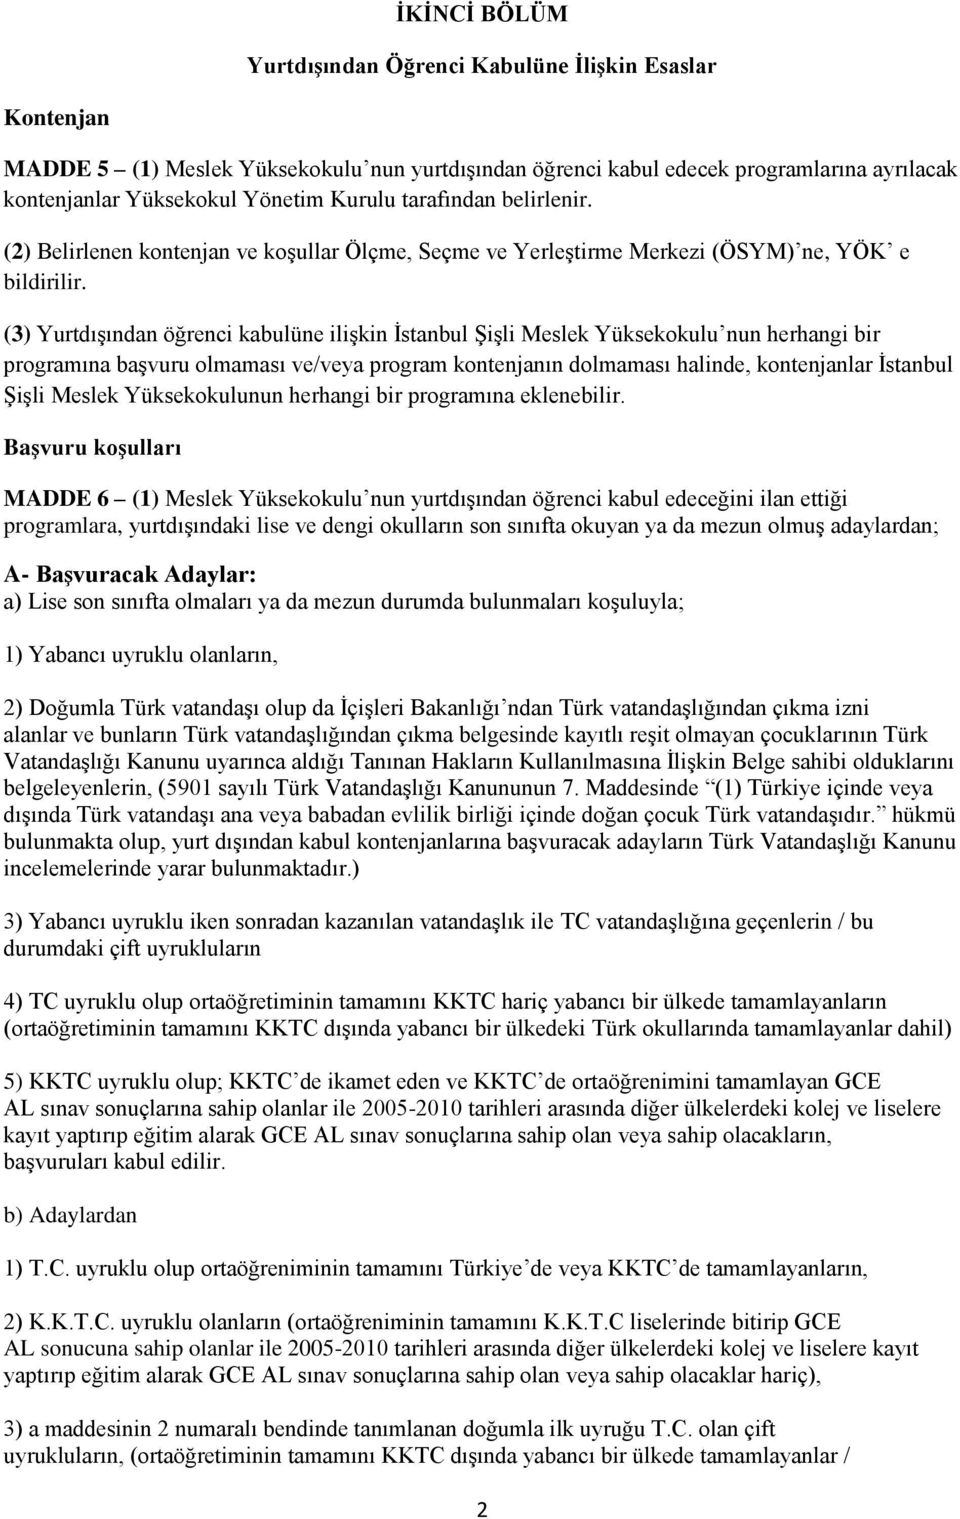 (3) Yurtdışından öğrenci kabulüne ilişkin İstanbul Şişli Meslek Yüksekokulu nun herhangi bir programına başvuru olmaması ve/veya program kontenjanın dolmaması halinde, kontenjanlar İstanbul Şişli